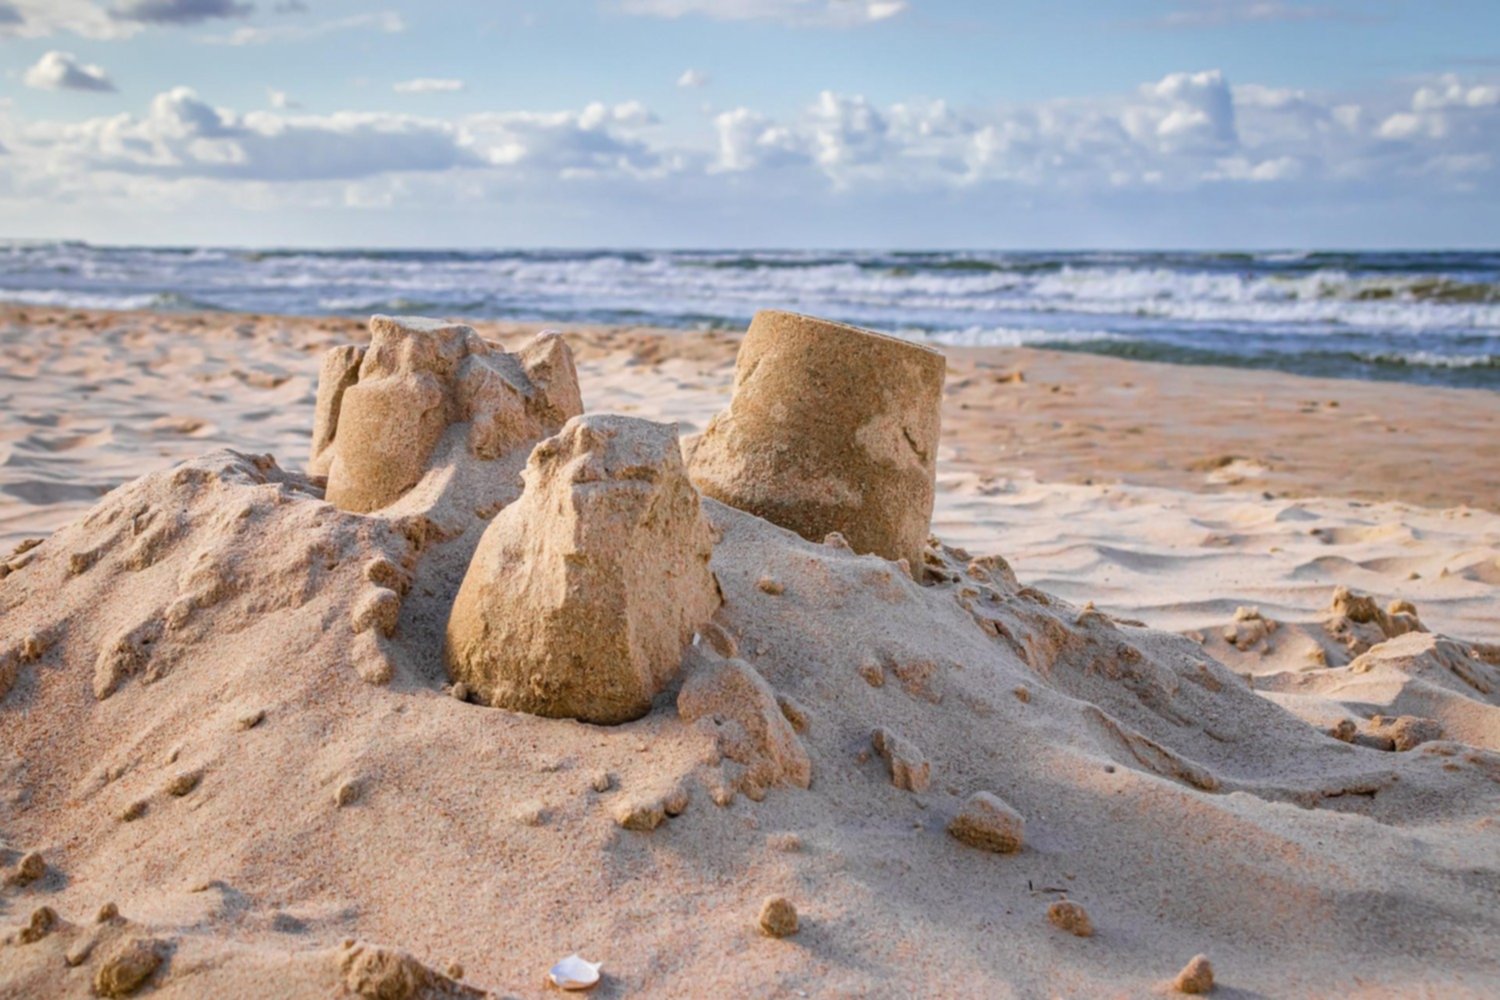 Niño de 11 años construyó un castillo de arena y murió aplastado por su  propia creación - Red Uno de Bolivia